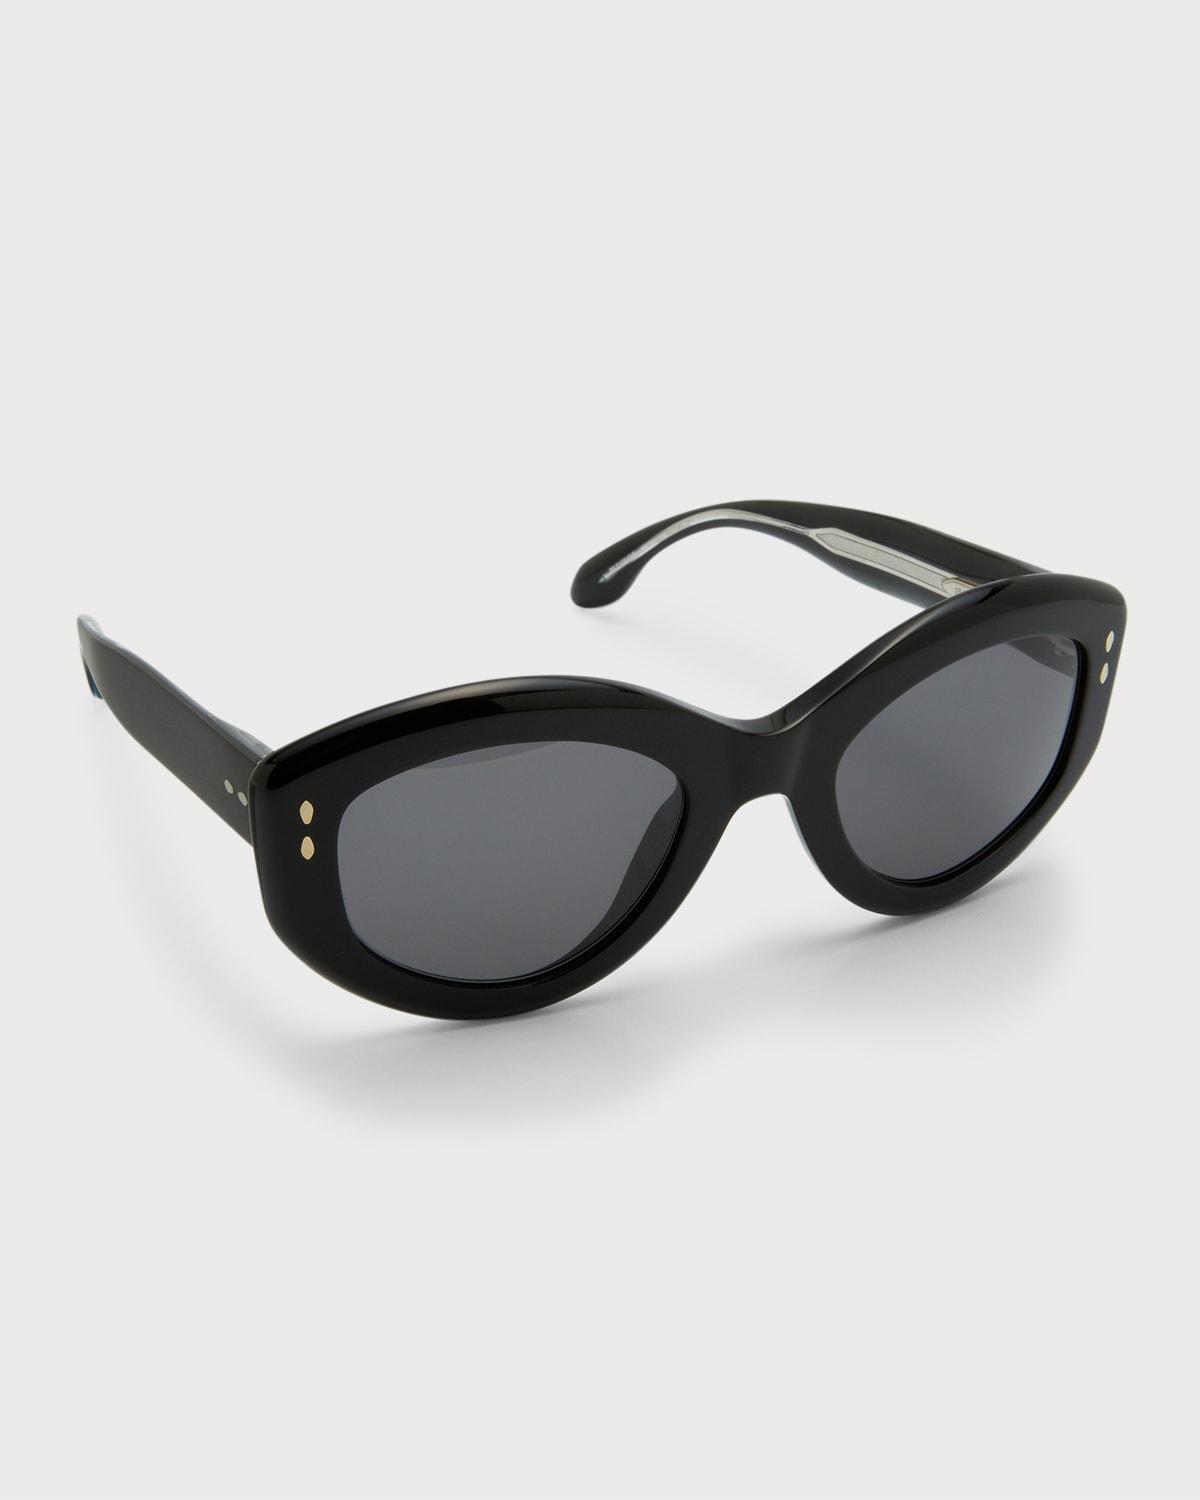 Isabel Marant 52mm Round Sunglasses Product Image